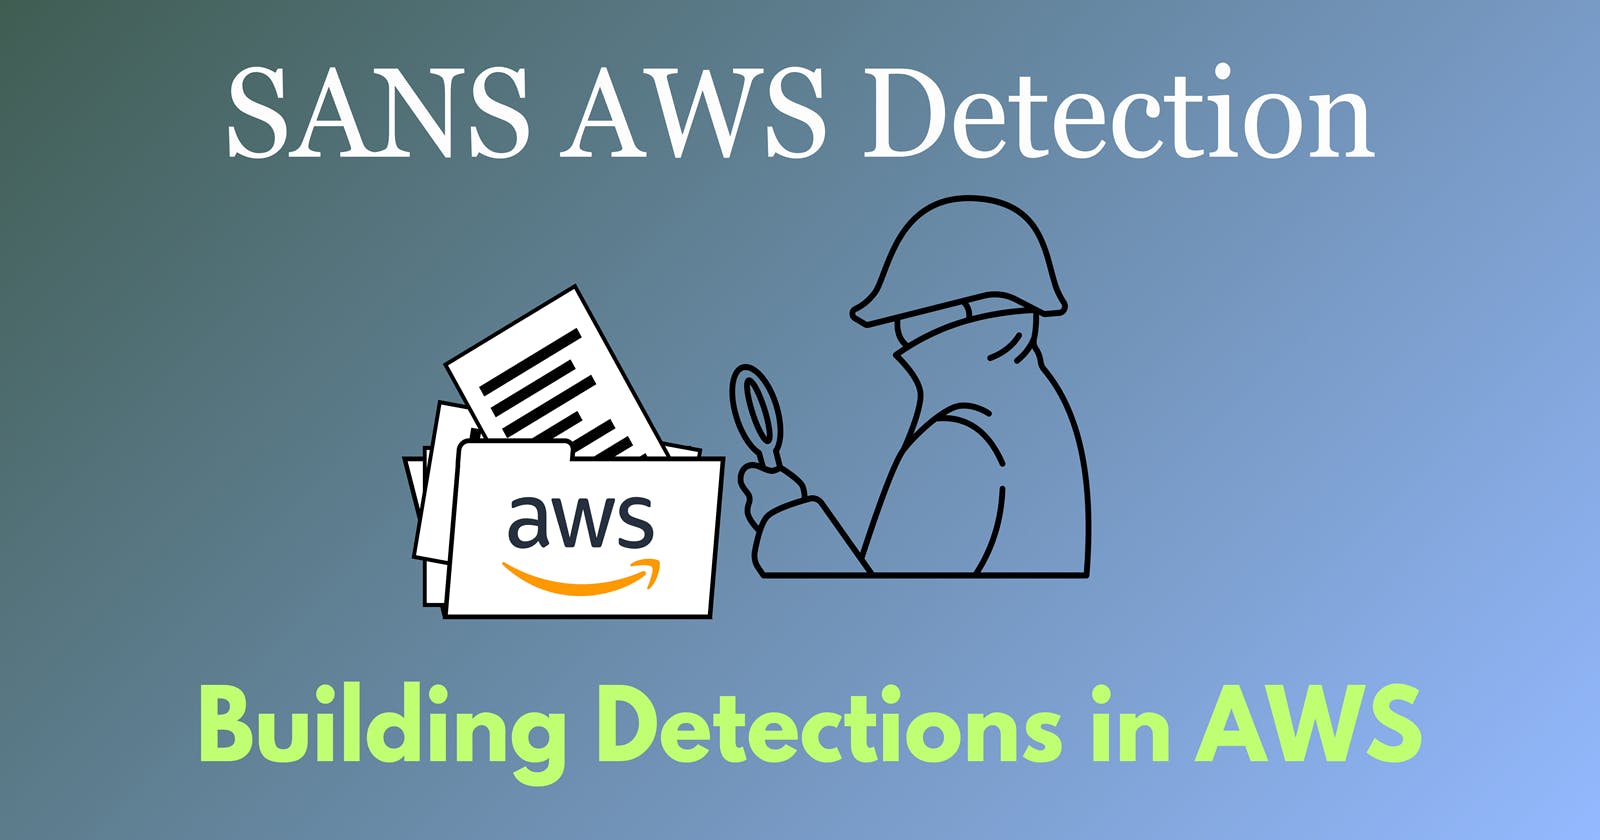 SANS AWS Detection